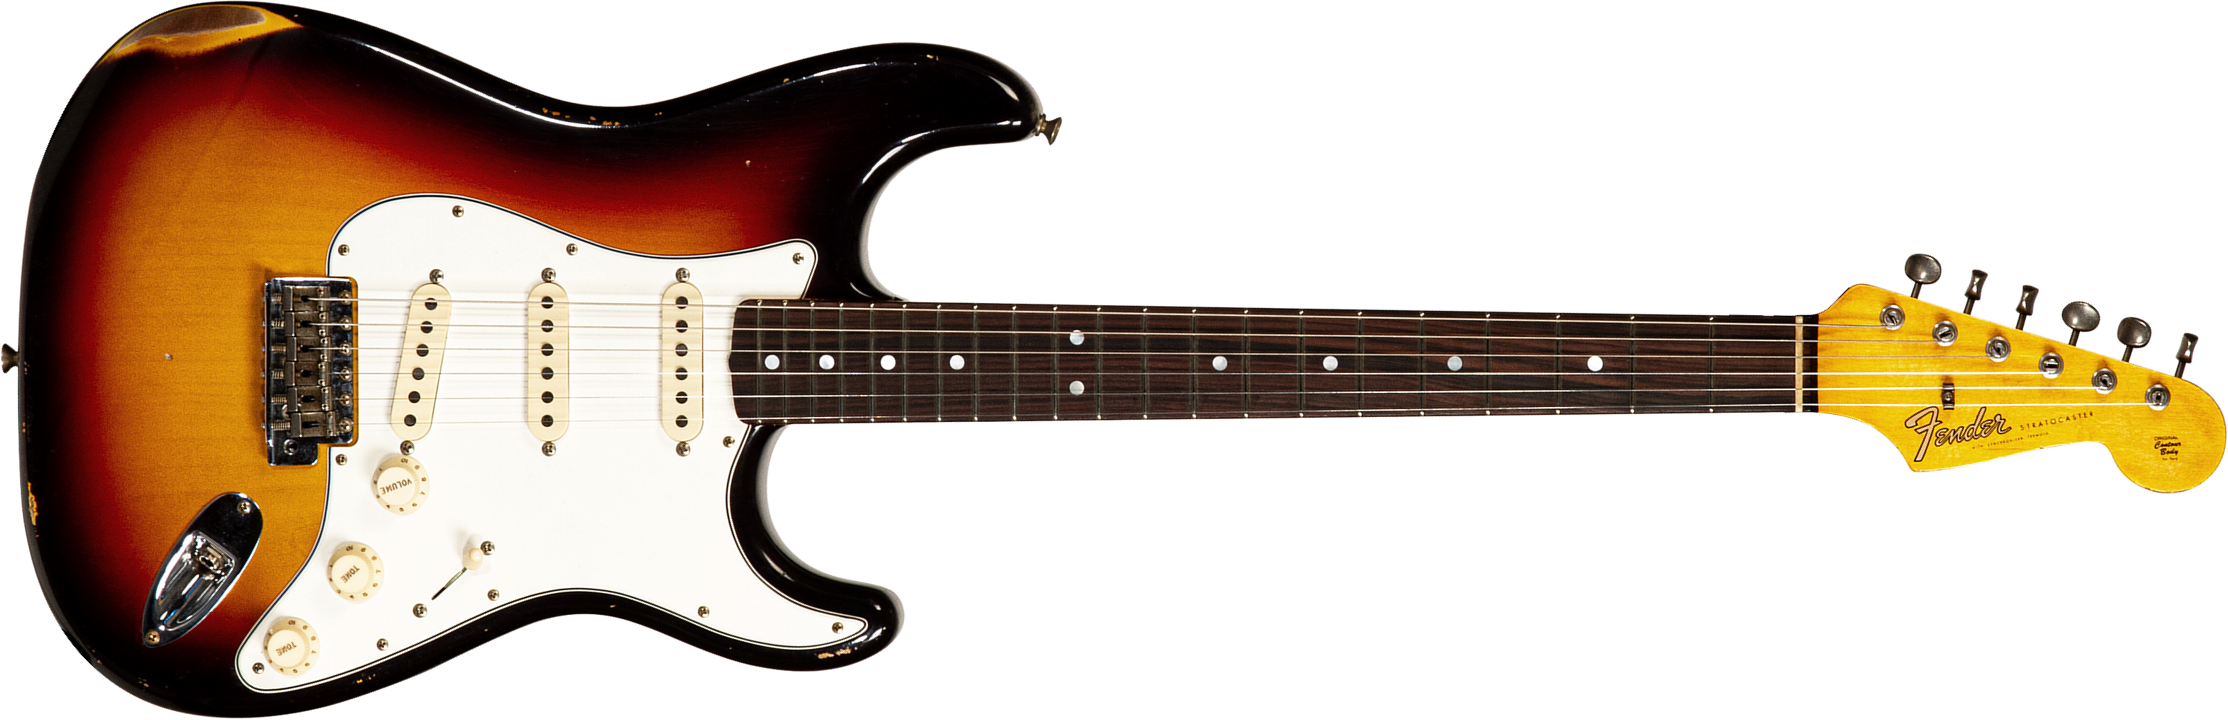 Fender Custom Shop Strat Late 64 3s Trem Rw #cz568169 - Relic Target 3-color Sunburst - Guitare Électrique Forme Str - Main picture